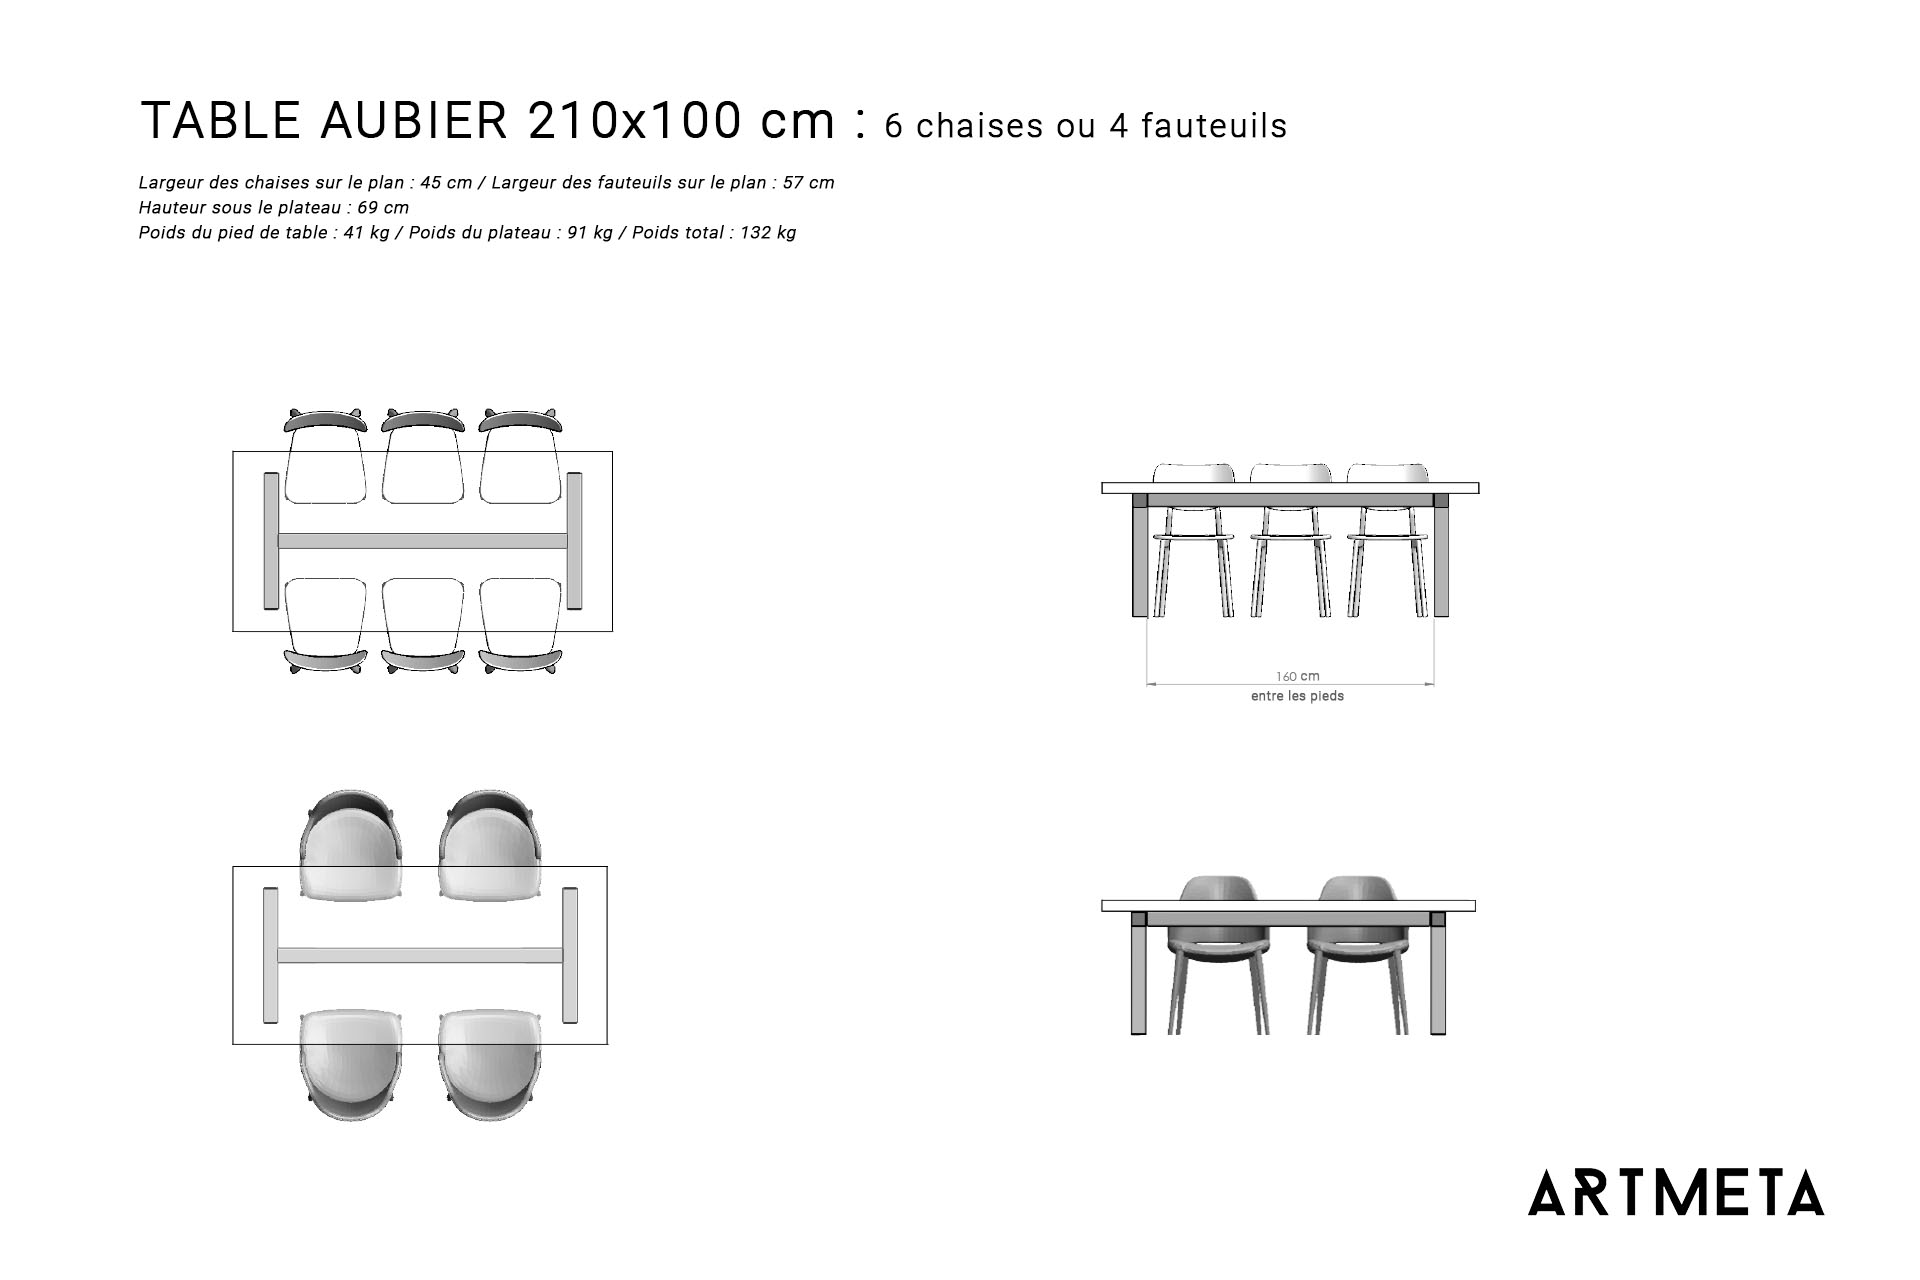 Guide des dimensions / Table à manger pour 6 personnes / Table Aubier ARTMETA